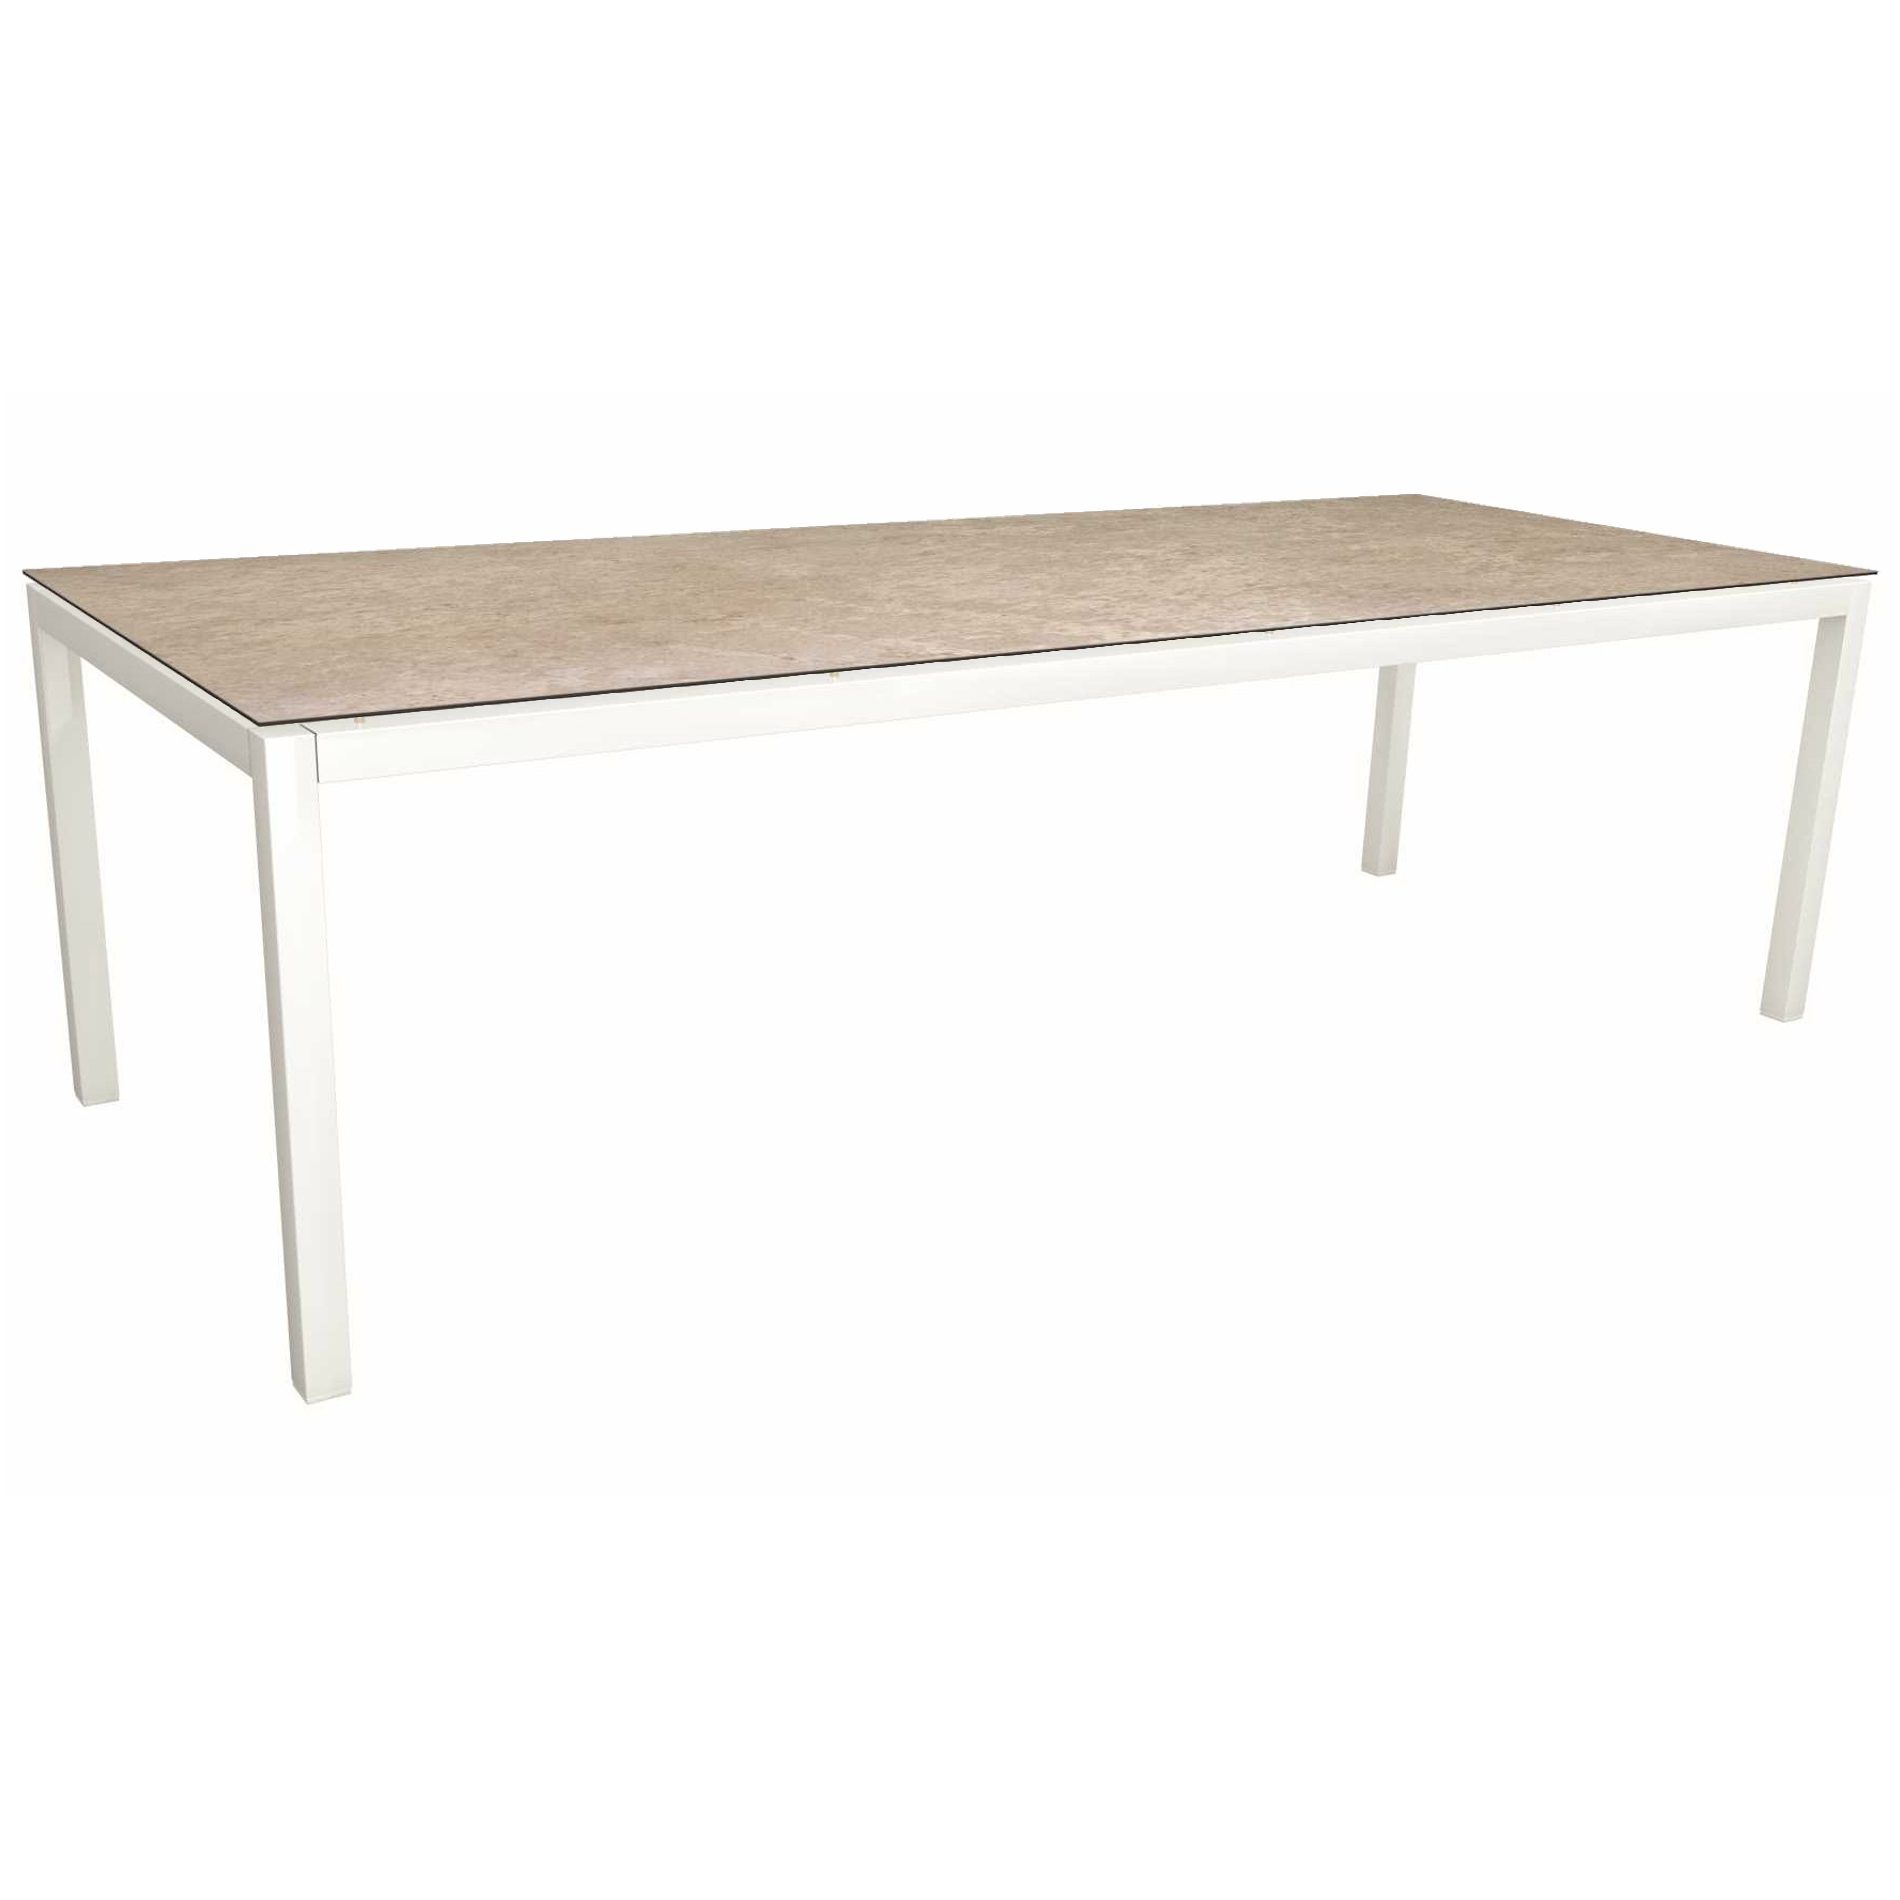 Stern Gartentisch, Gestell Aluminium weiß, Tischplatte HPL Vintage Shell, 250x100cm